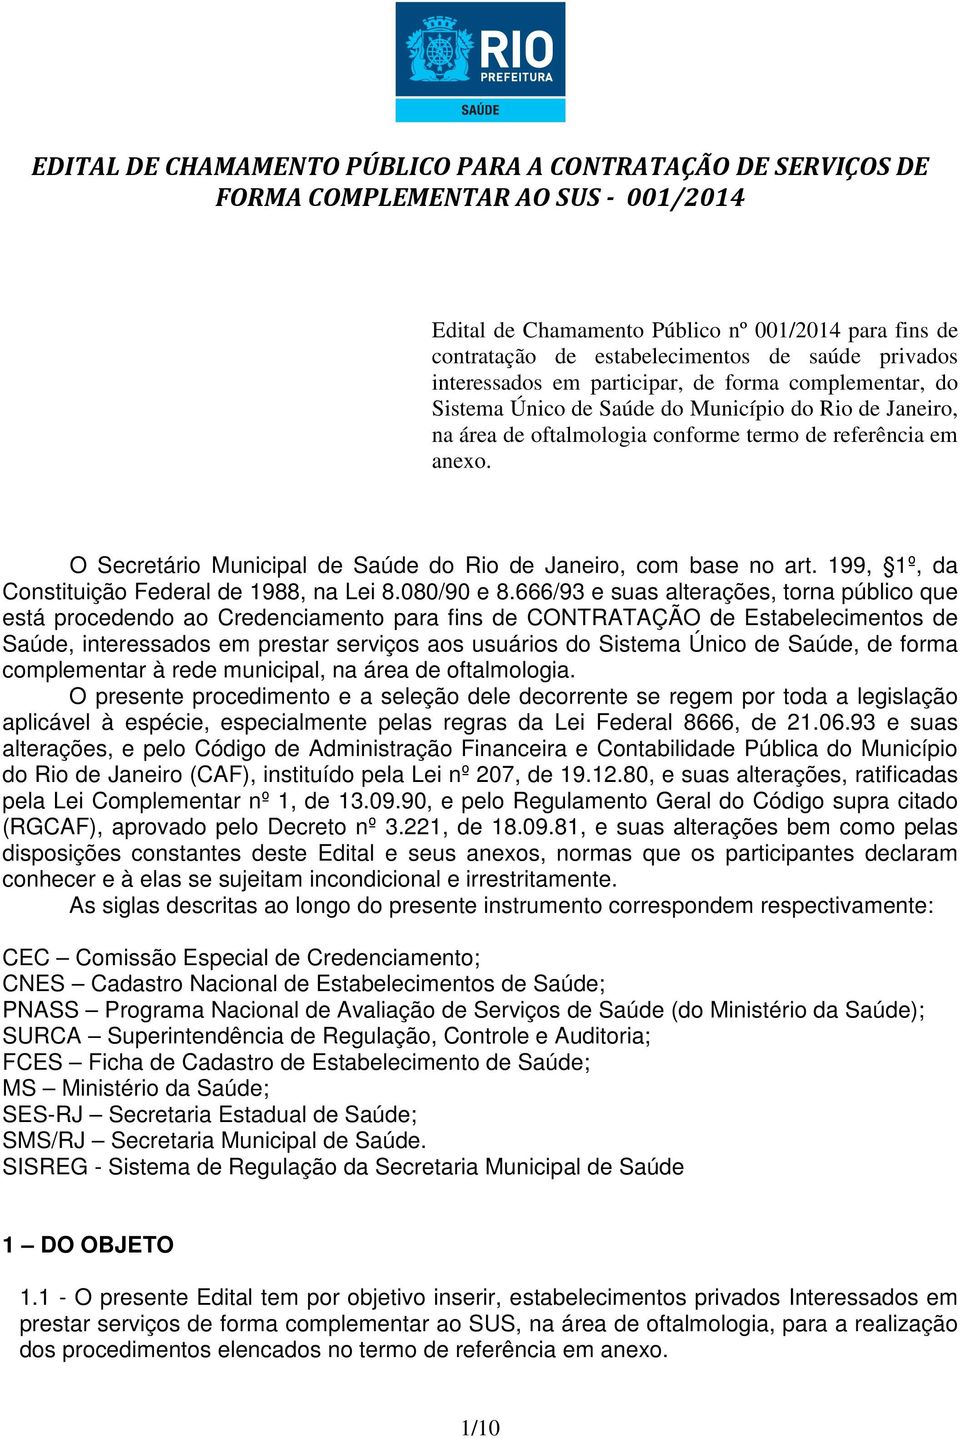 O Secretário Municipal de Saúde do Rio de Janeiro, com base no art. 199, 1º, da Constituição Federal de 1988, na Lei 8.080/90 e 8.